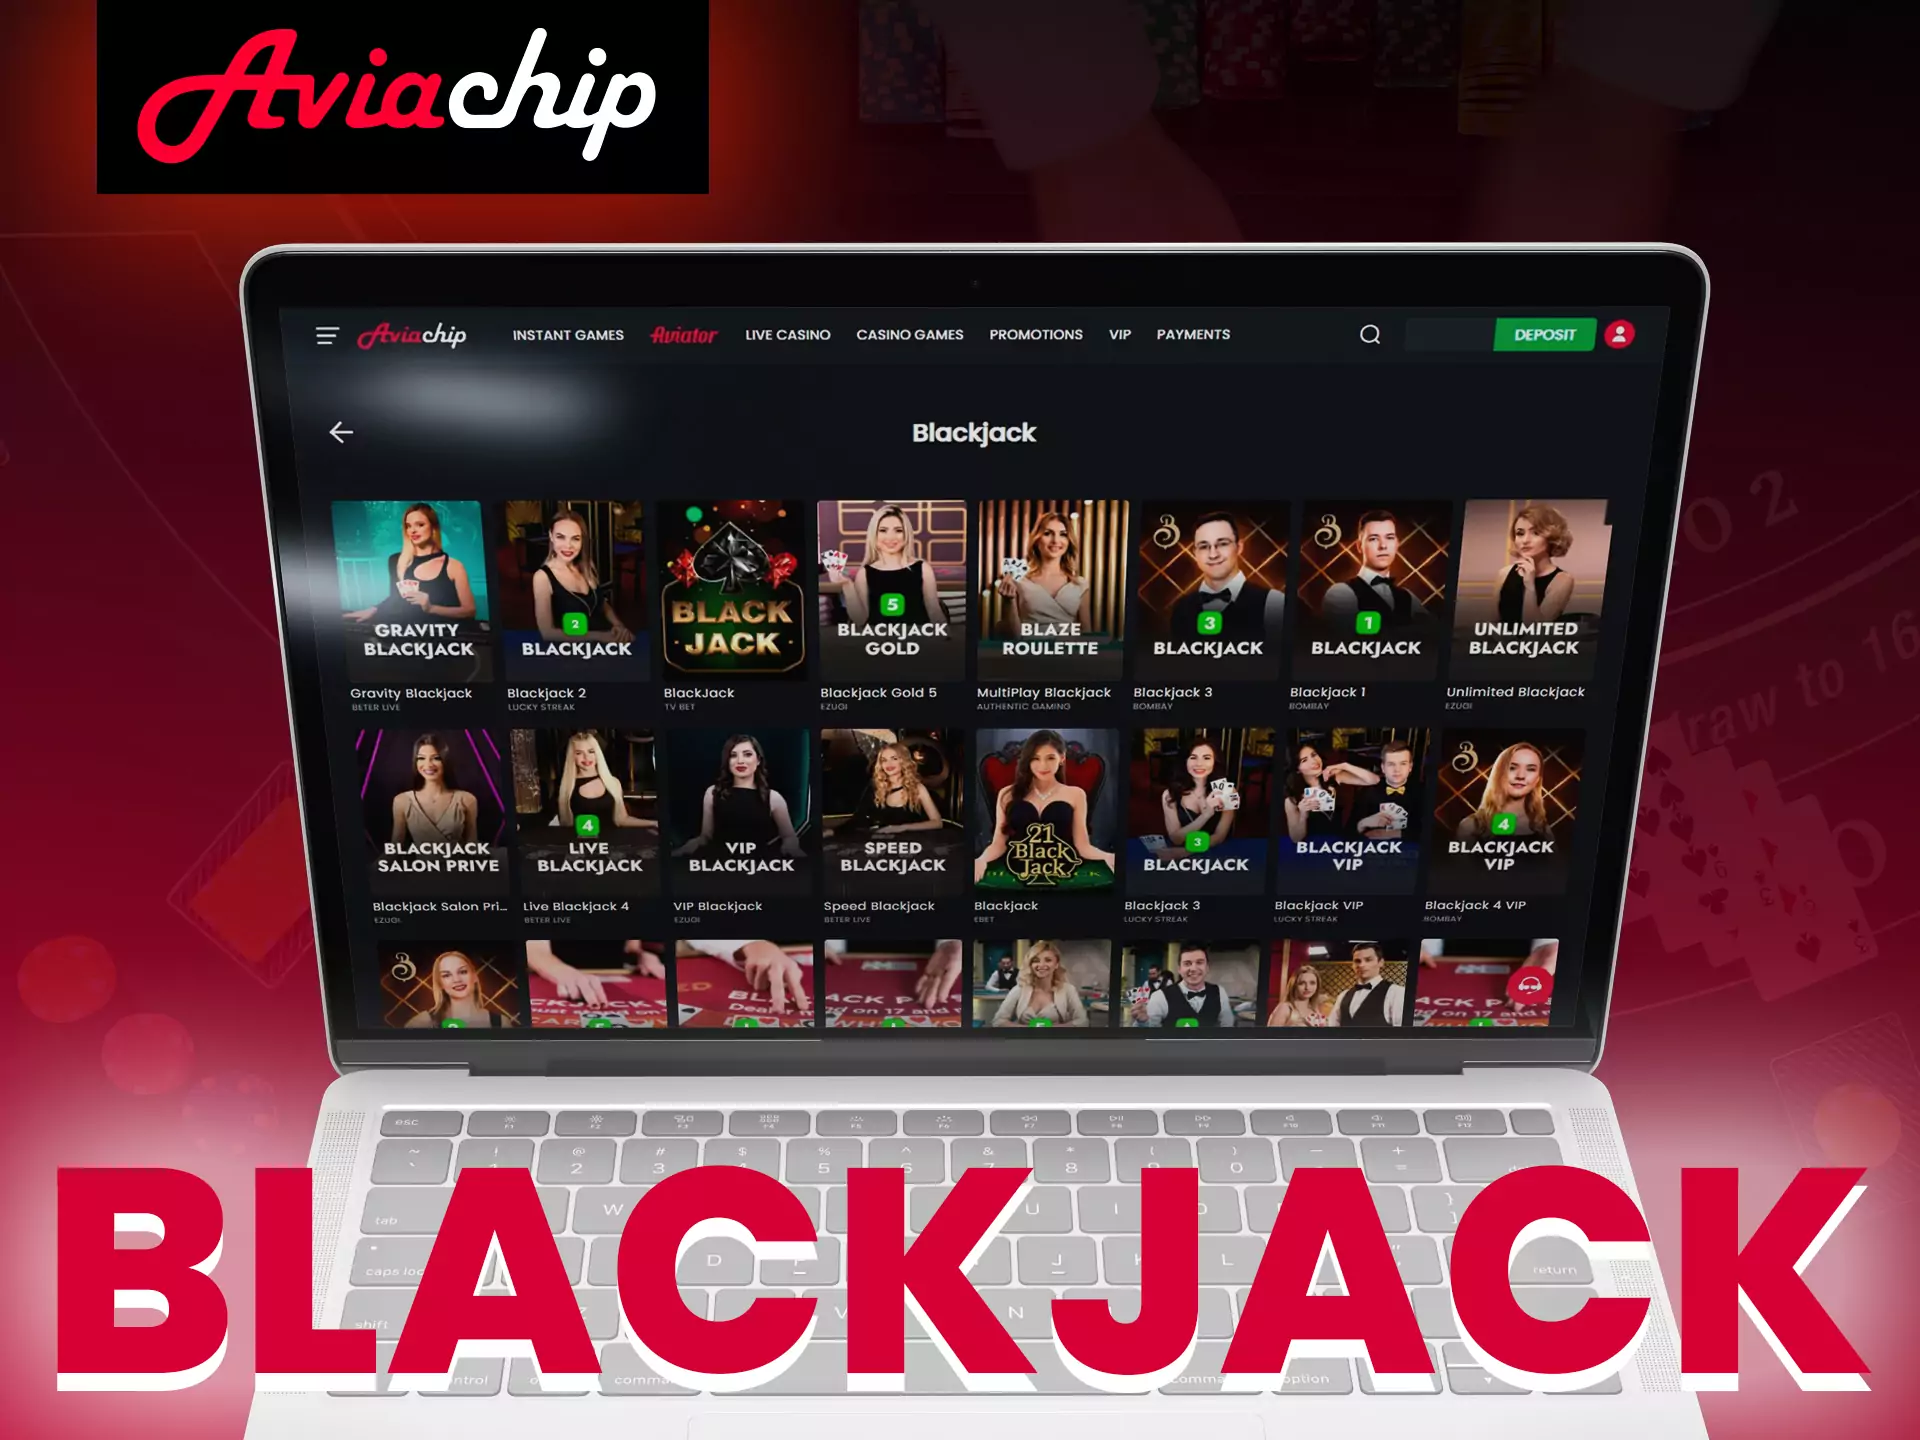 Play blackjack on Aviachip.